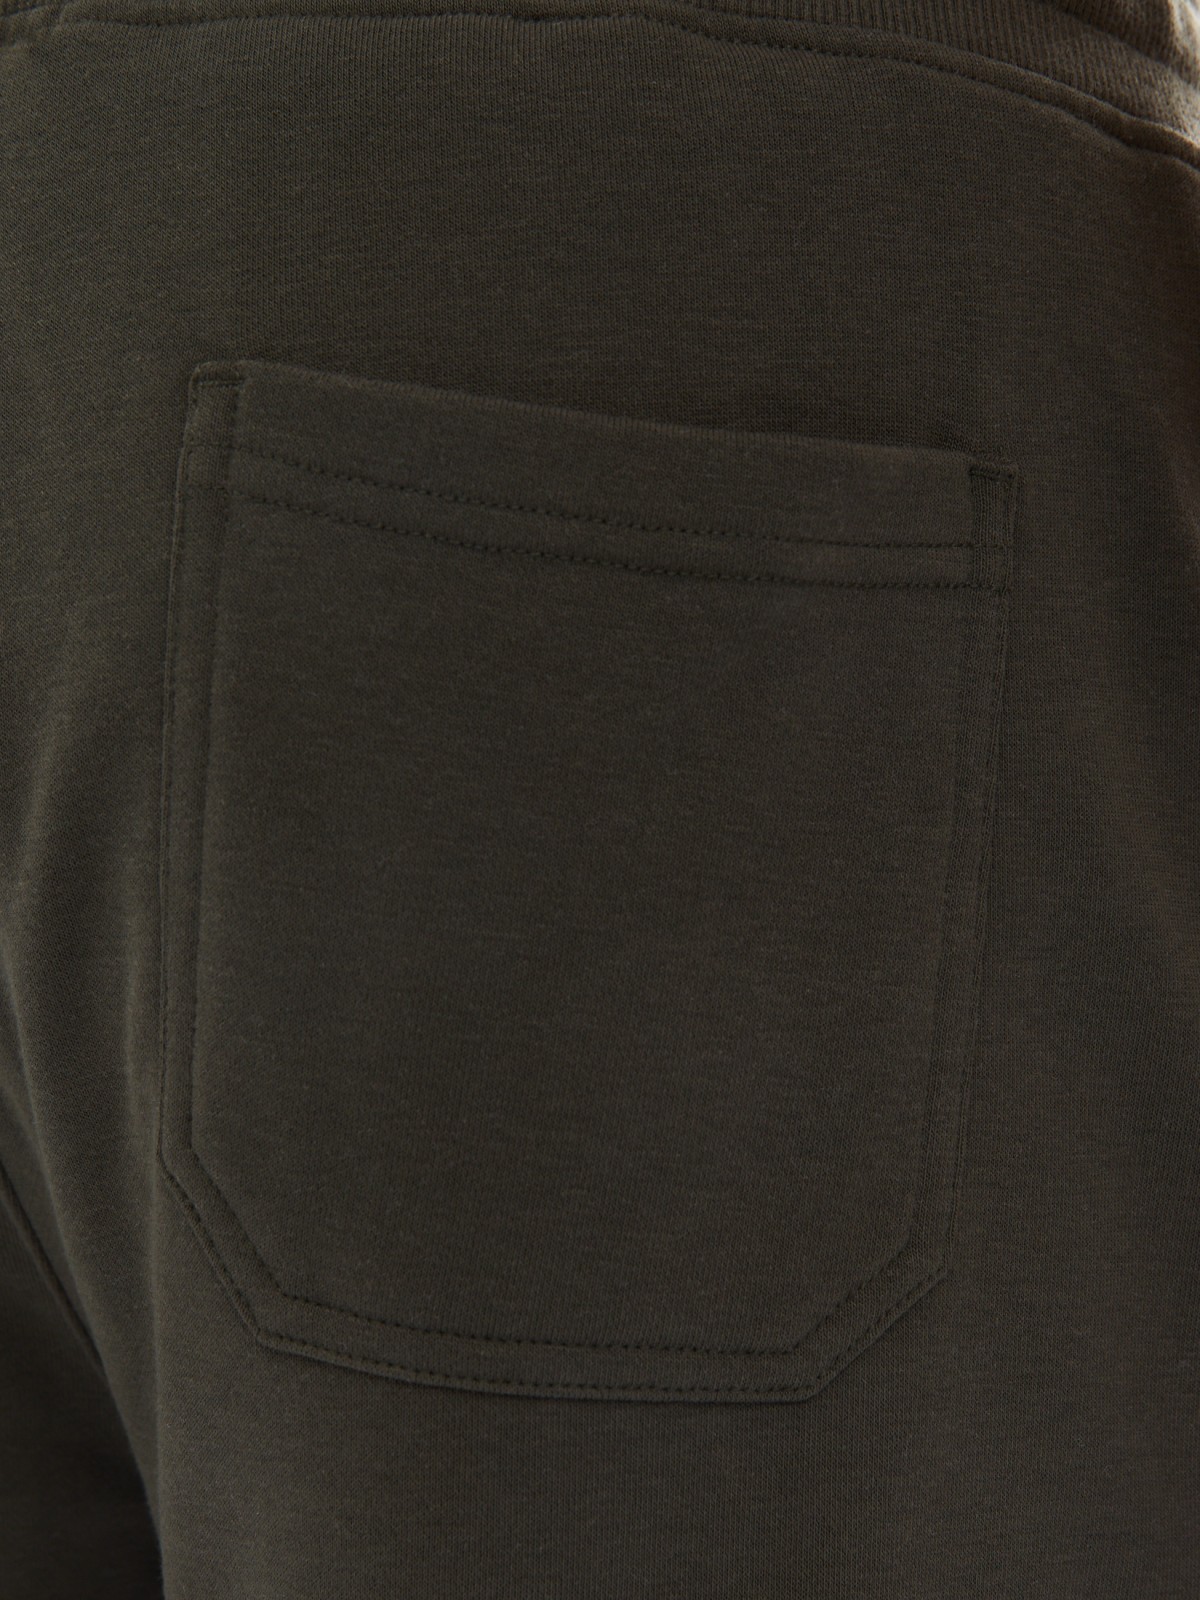 Трикотажные брюки-джоггеры в спортивном стиле zolla 014137675022, цвет хаки, размер M - фото 5